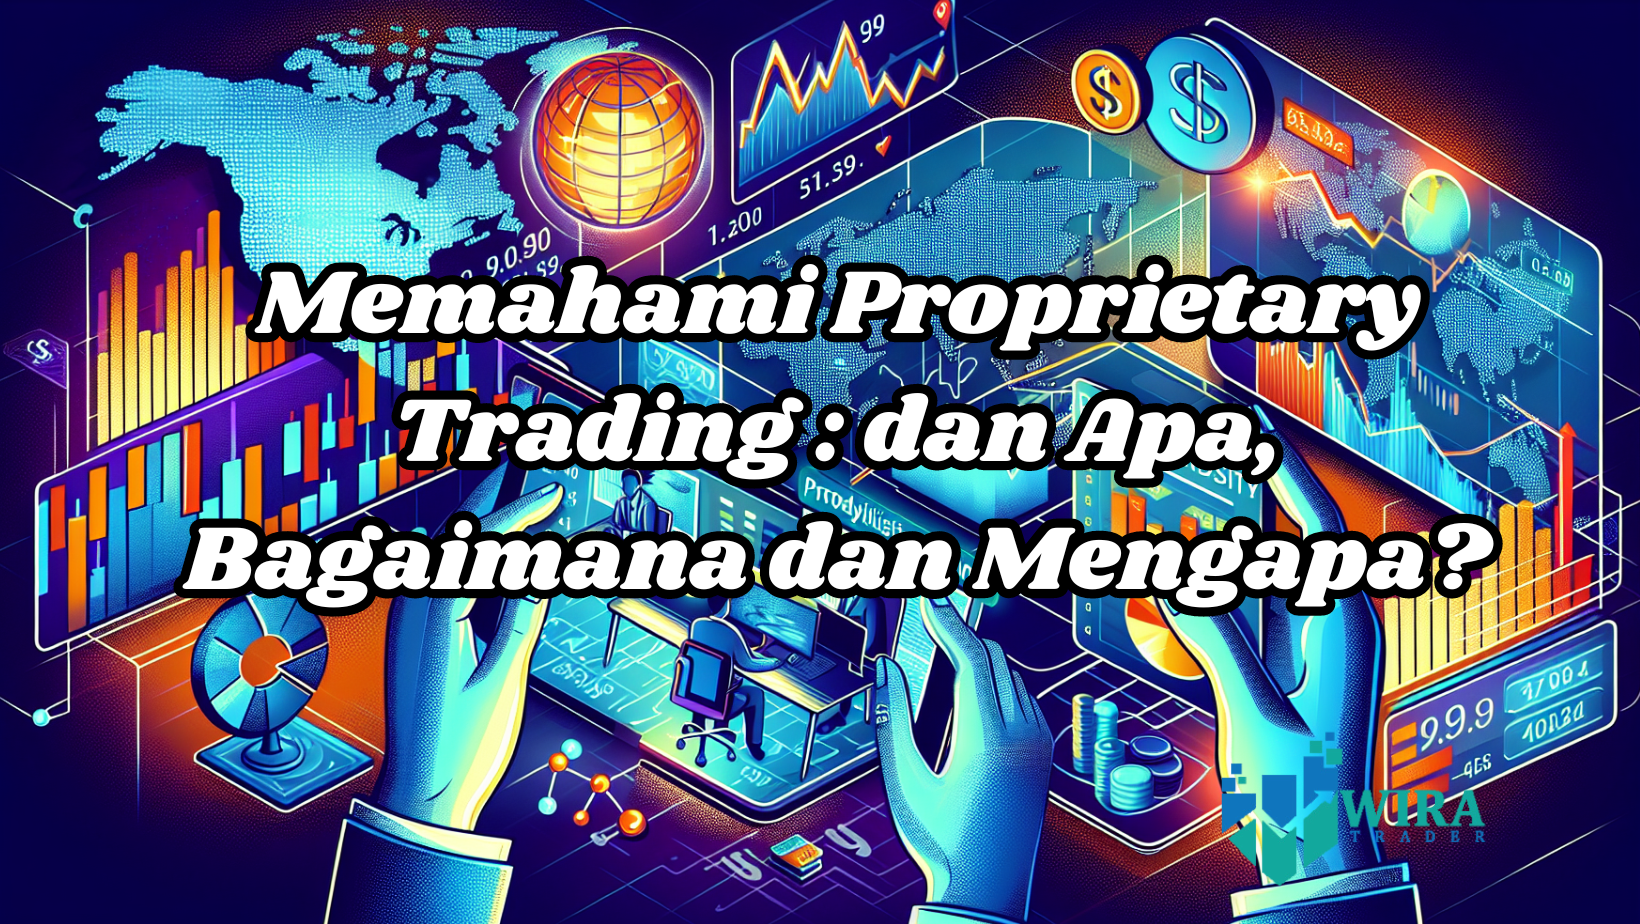 You are currently viewing Memahami Proprietary Trading : dan Apa, Bagaimana dan Mengapa?